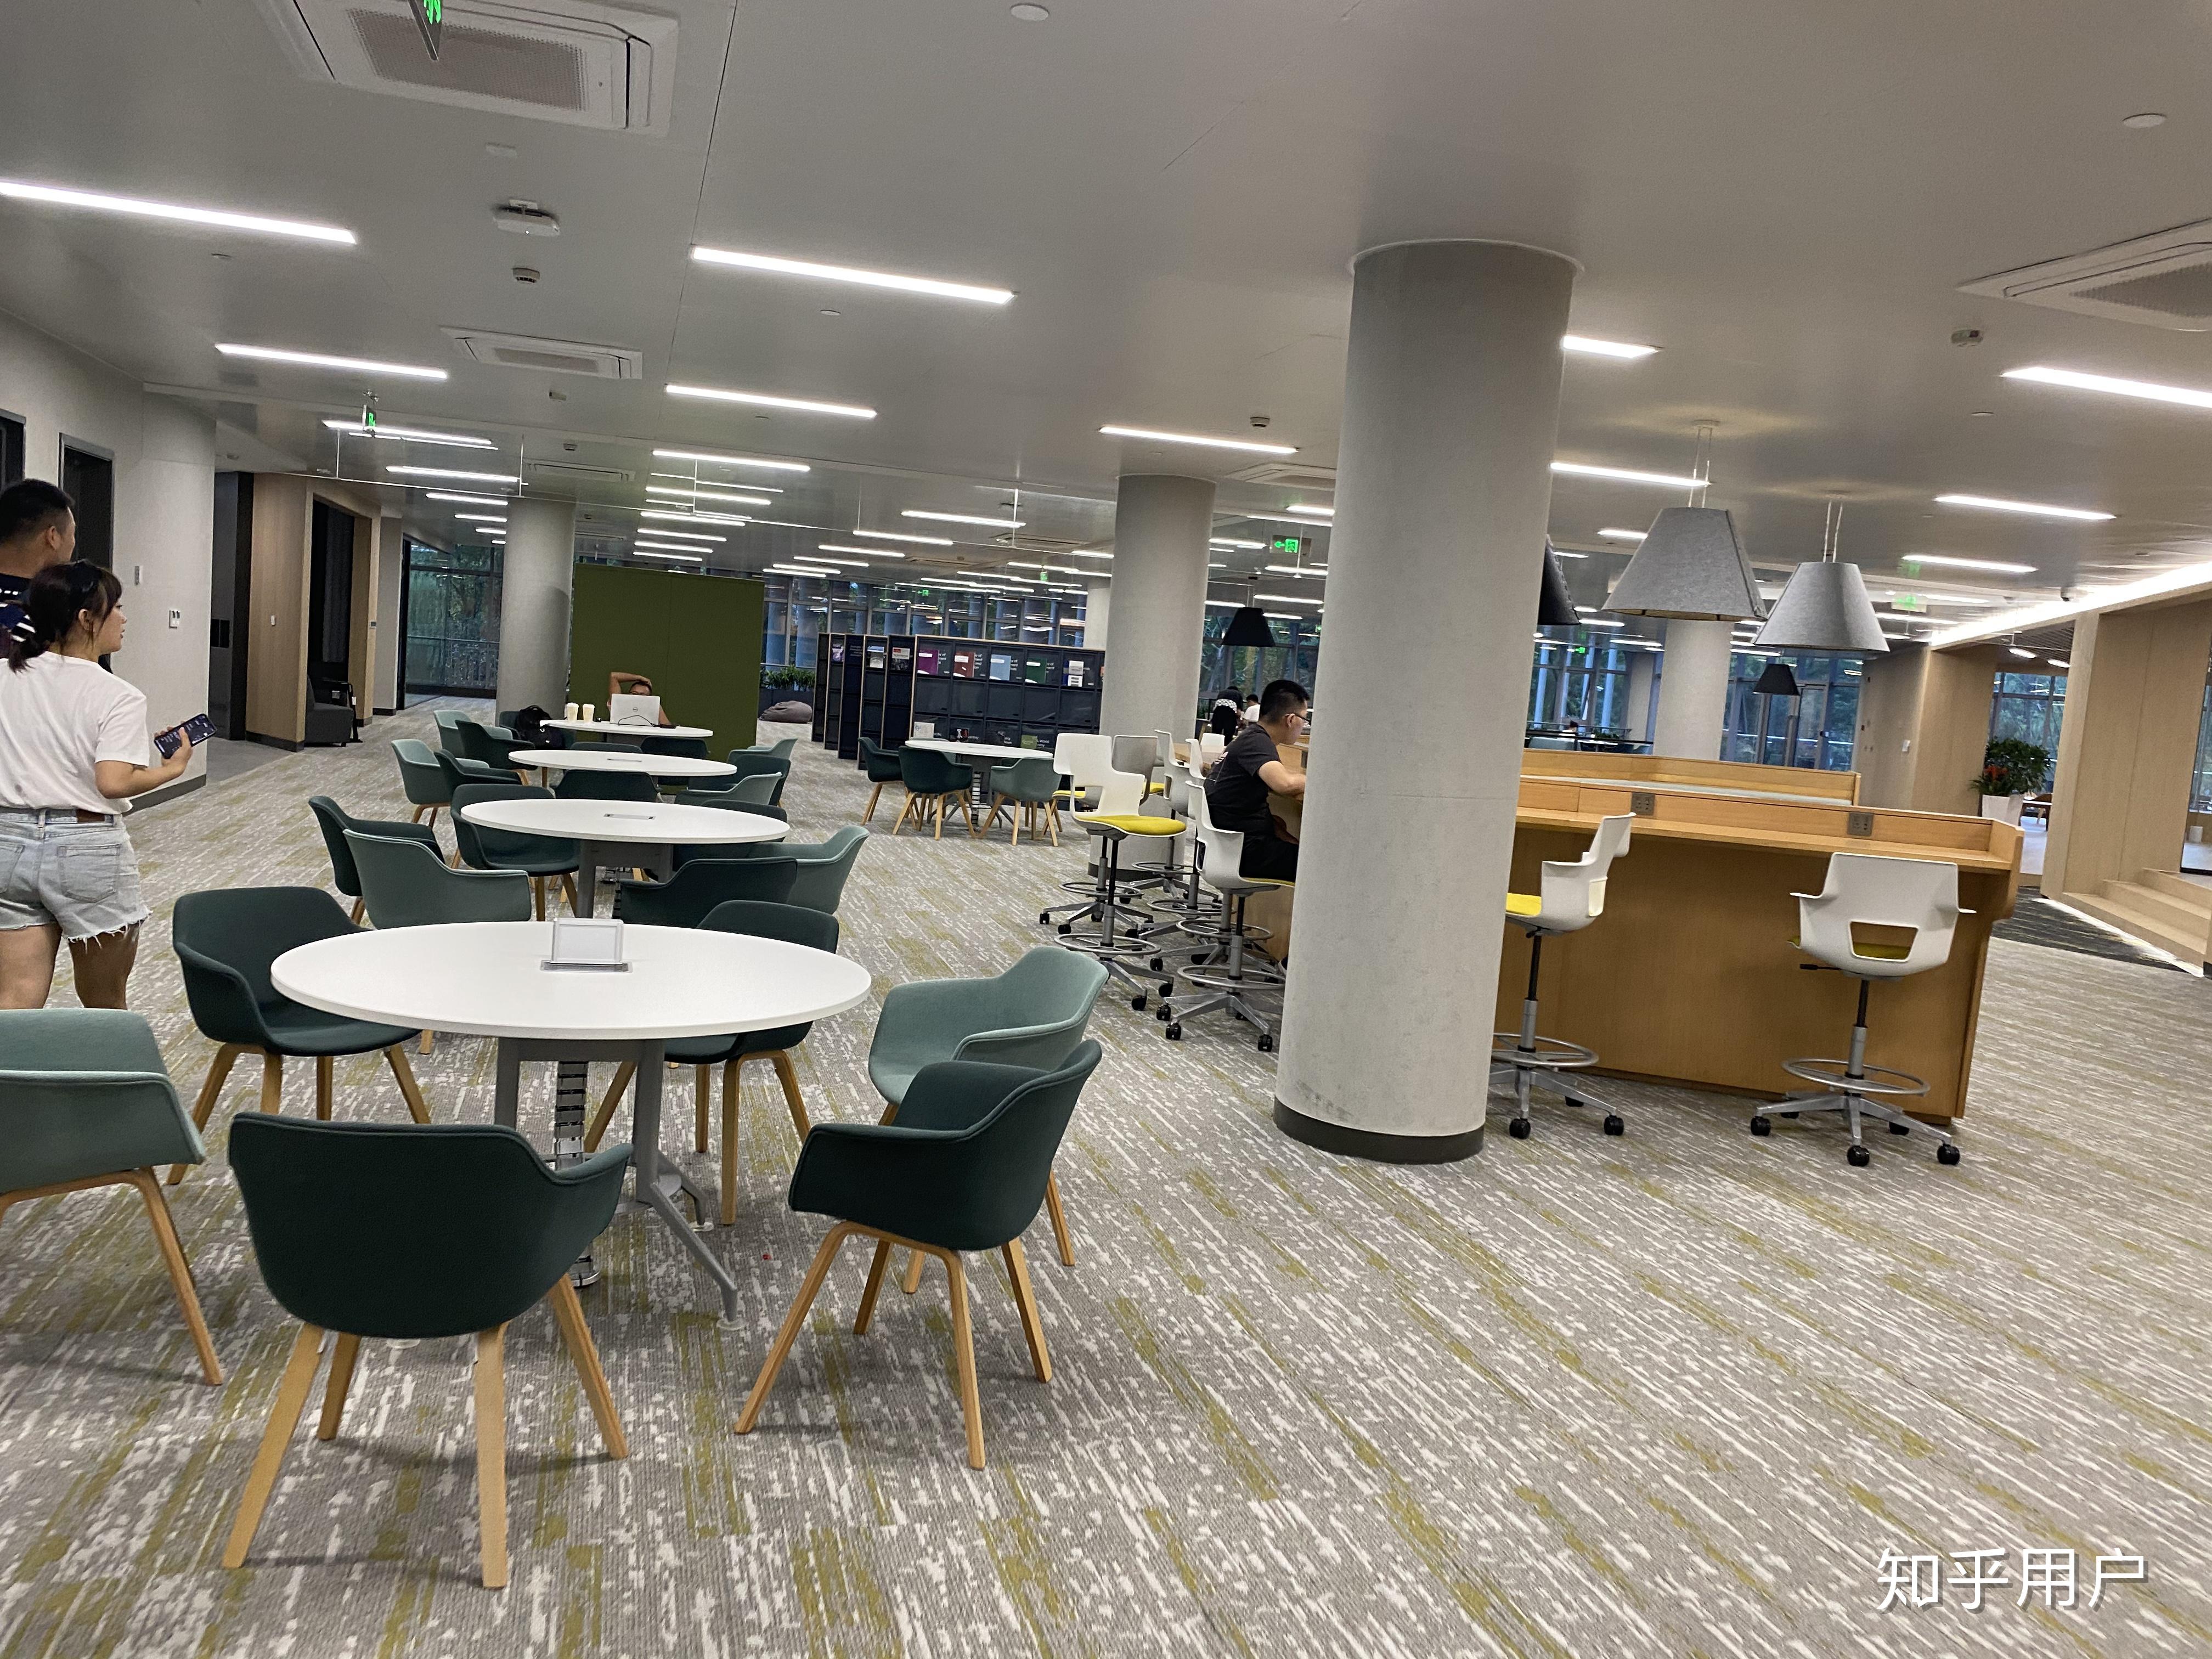 宁波诺丁汉大学的图书馆或教室环境如何是否适合上自习